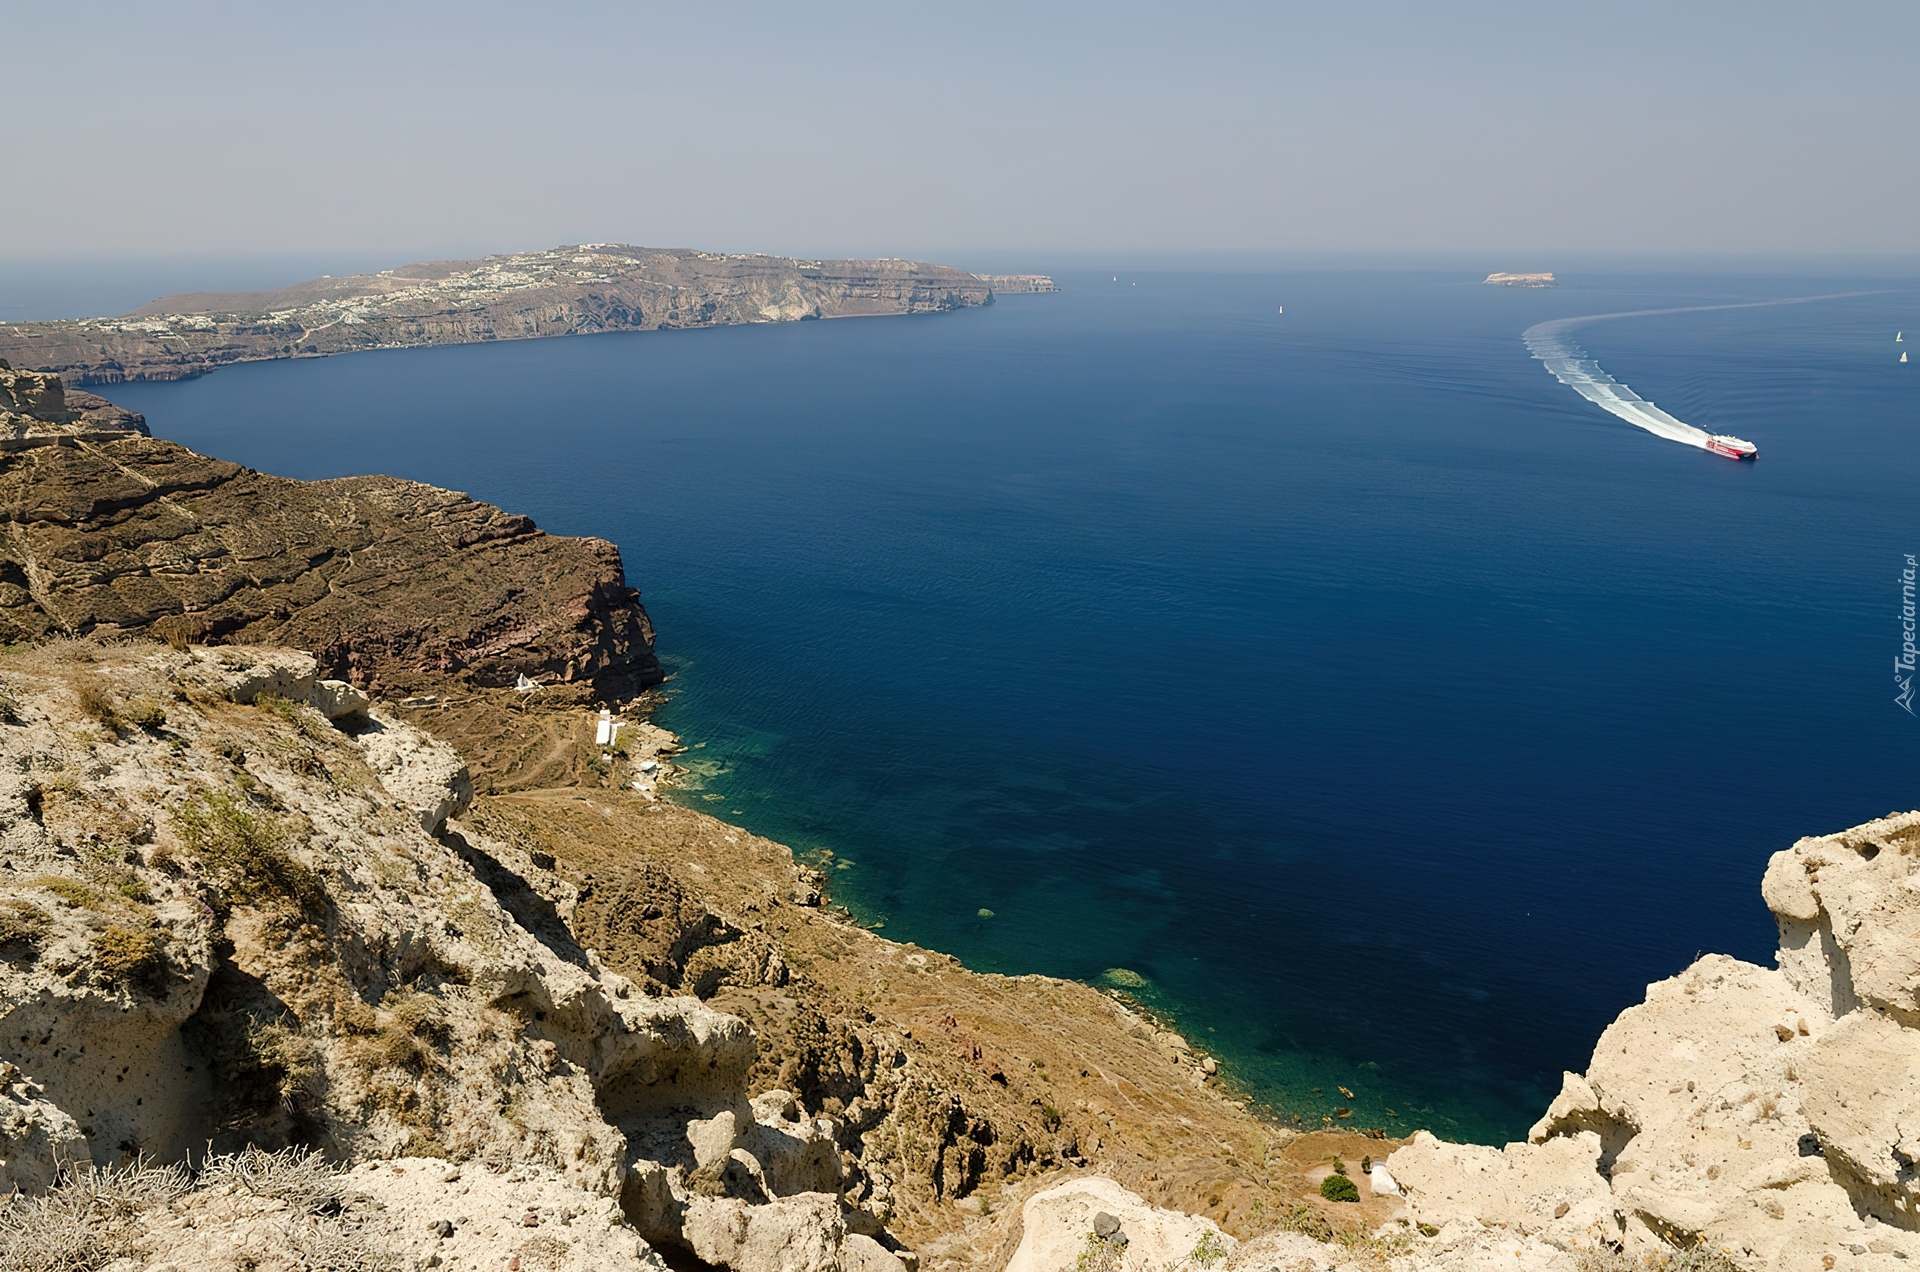 Morze, Kamienisty, Brzeg, Santorini, Grecja